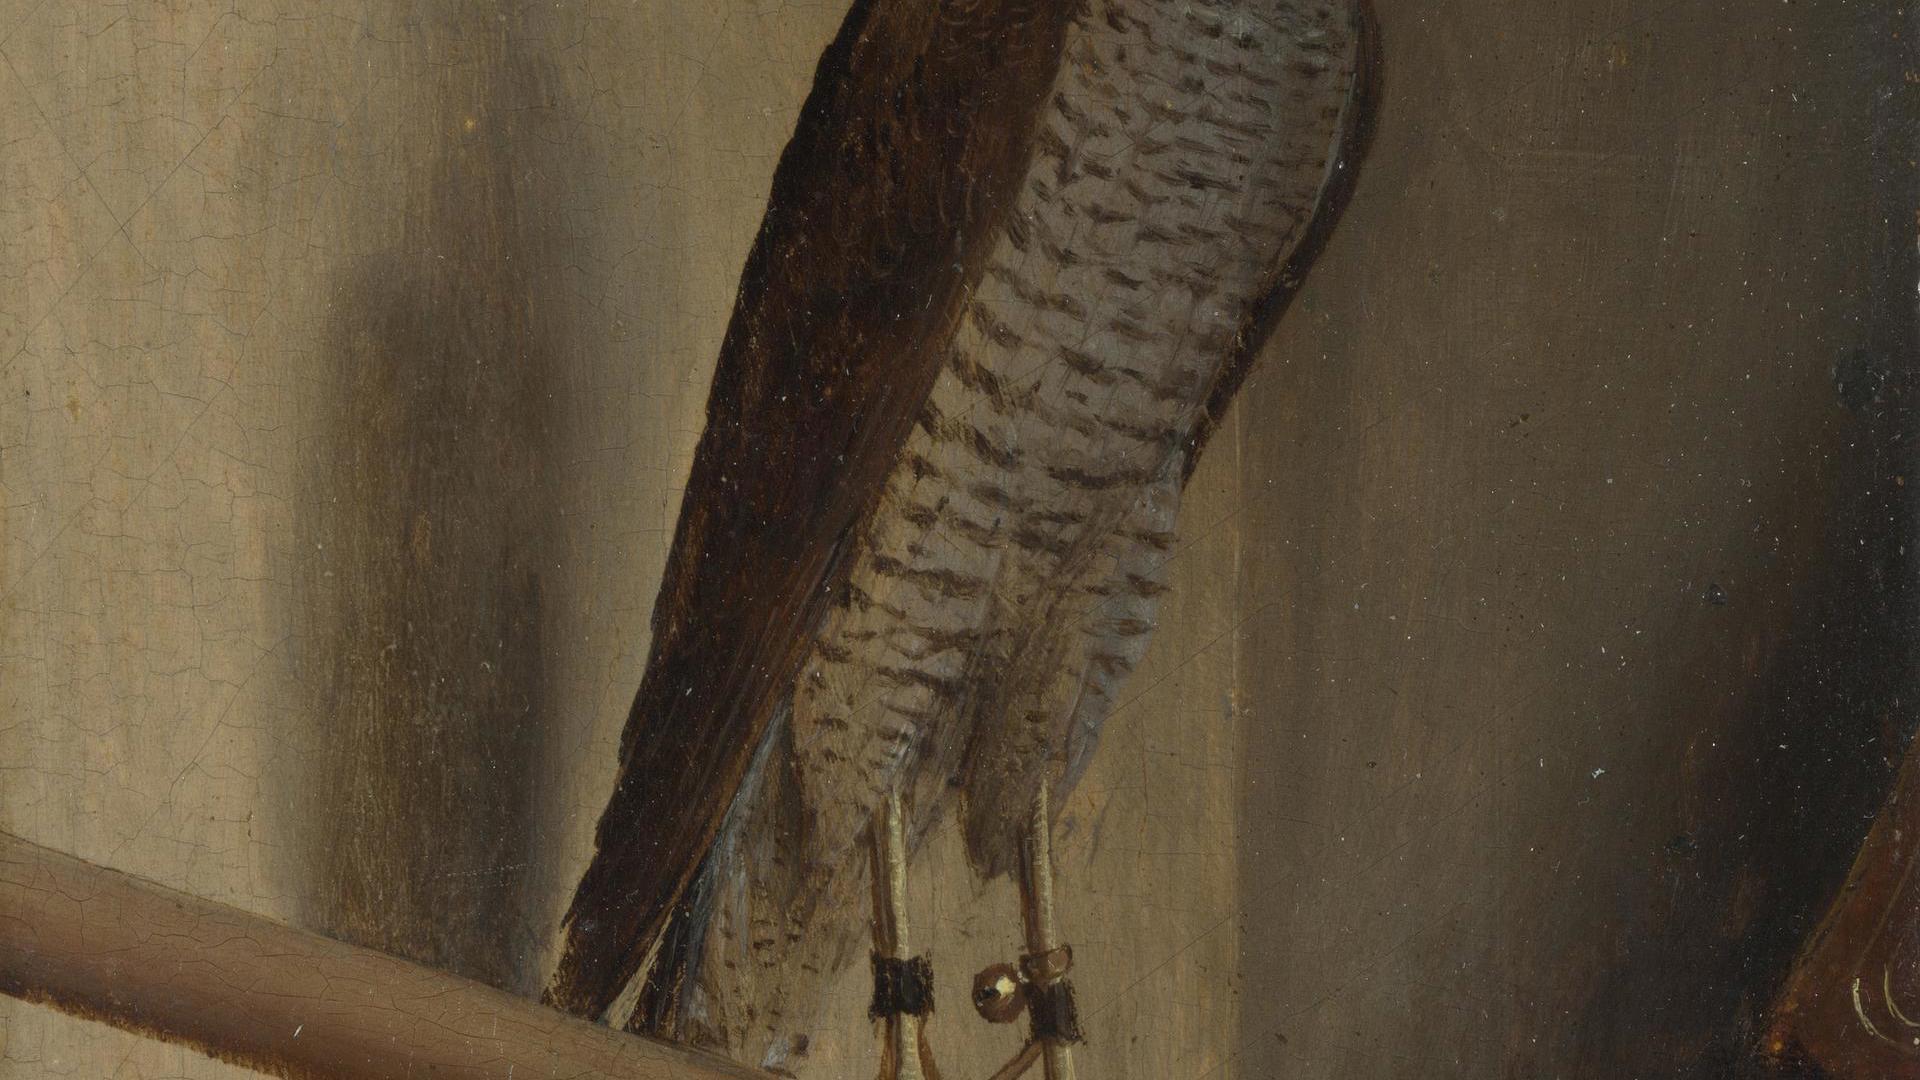 A Sparrowhawk by Jacopo de' Barbari